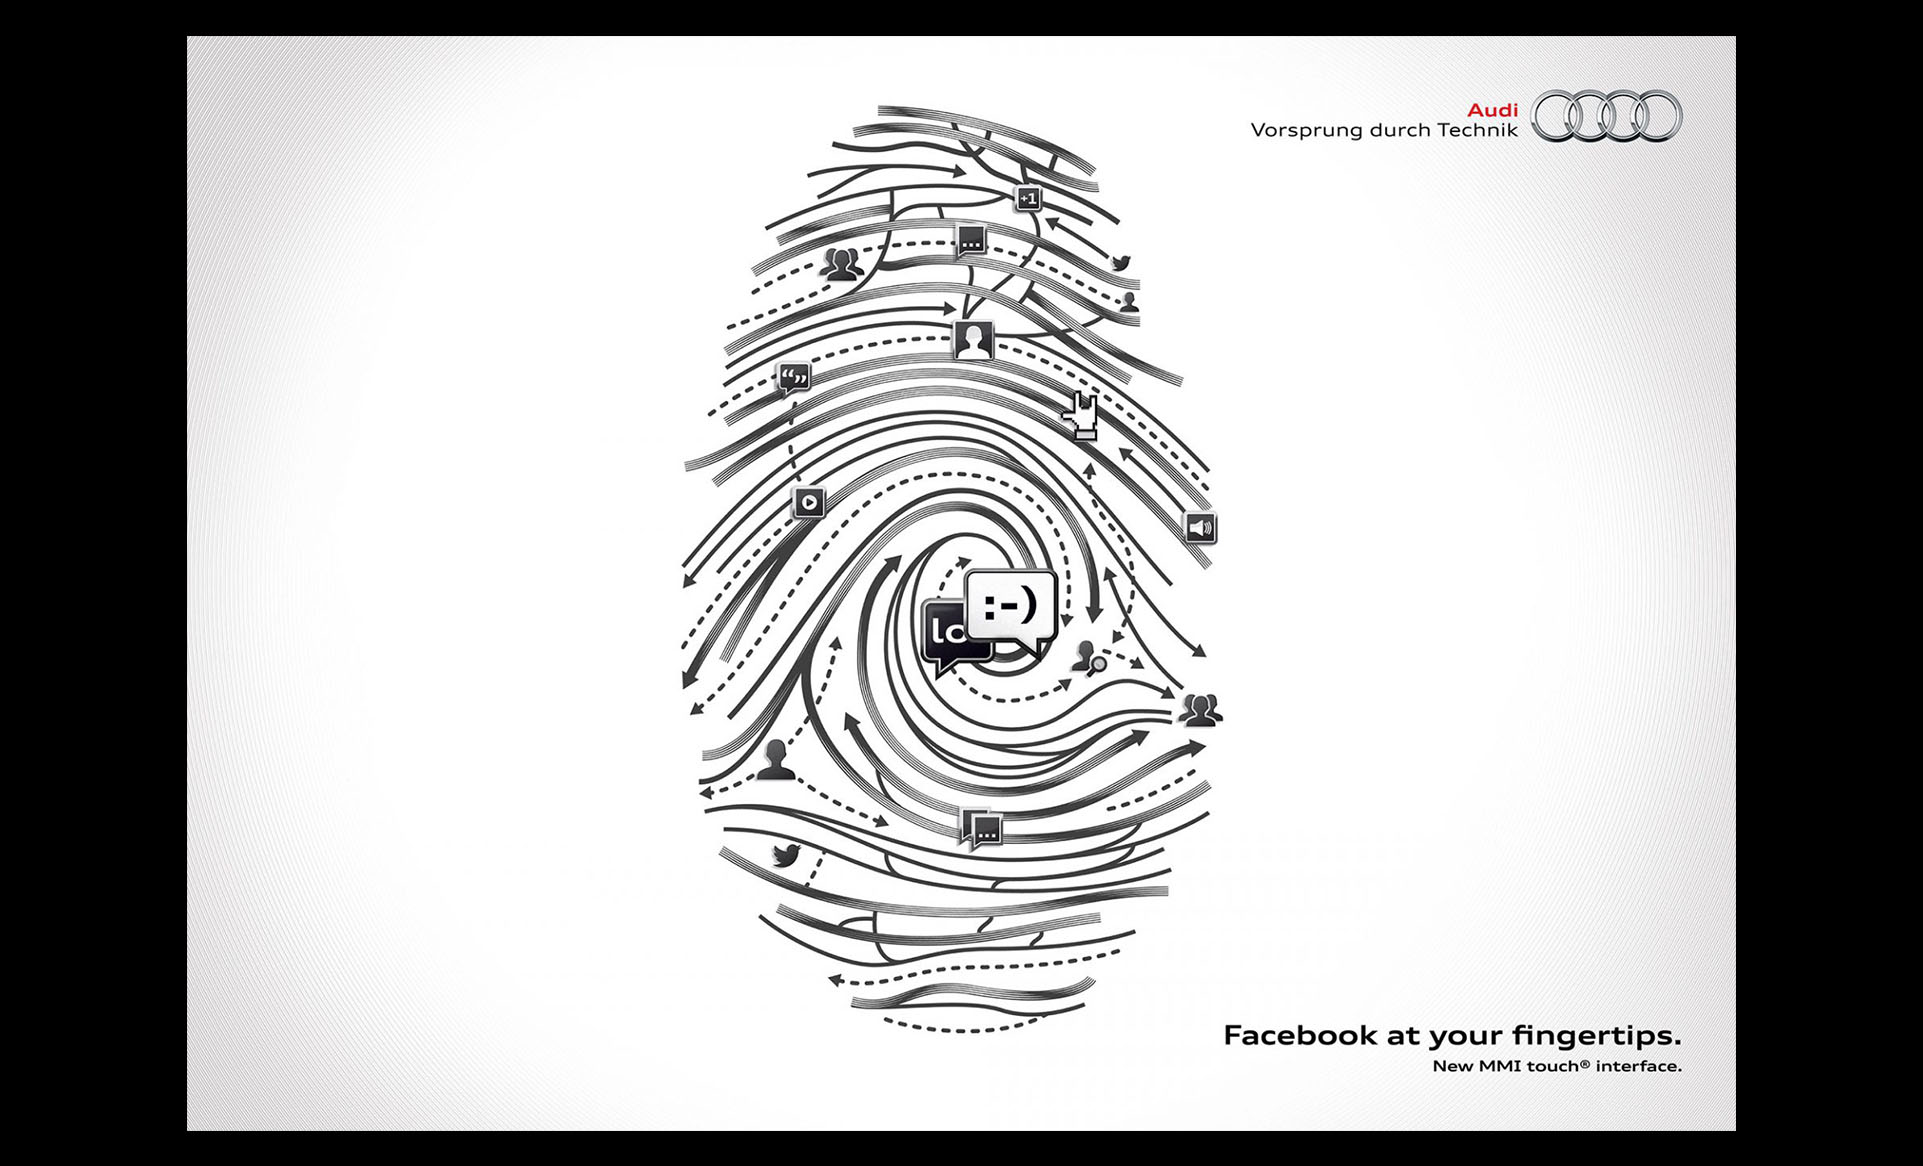 Audi-Fingerprint-Social